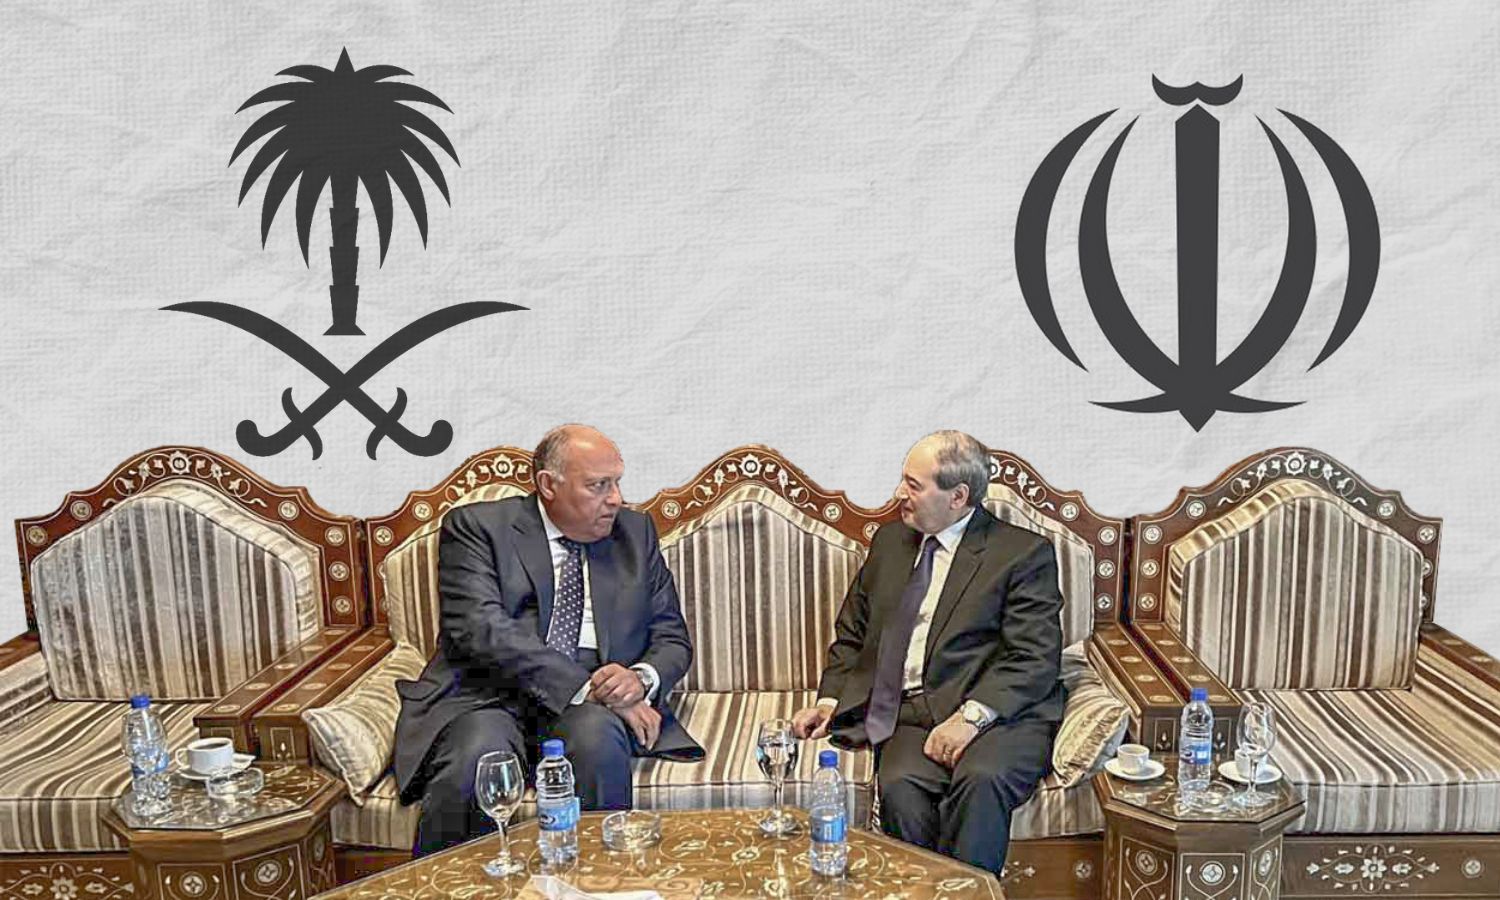 وزير خارجية النظام السوري ووزير الخارجية المصري، يظهر خلفهما شعارات إيران (يمين) السعودية (يسار) (تعديل عنب بلدي)